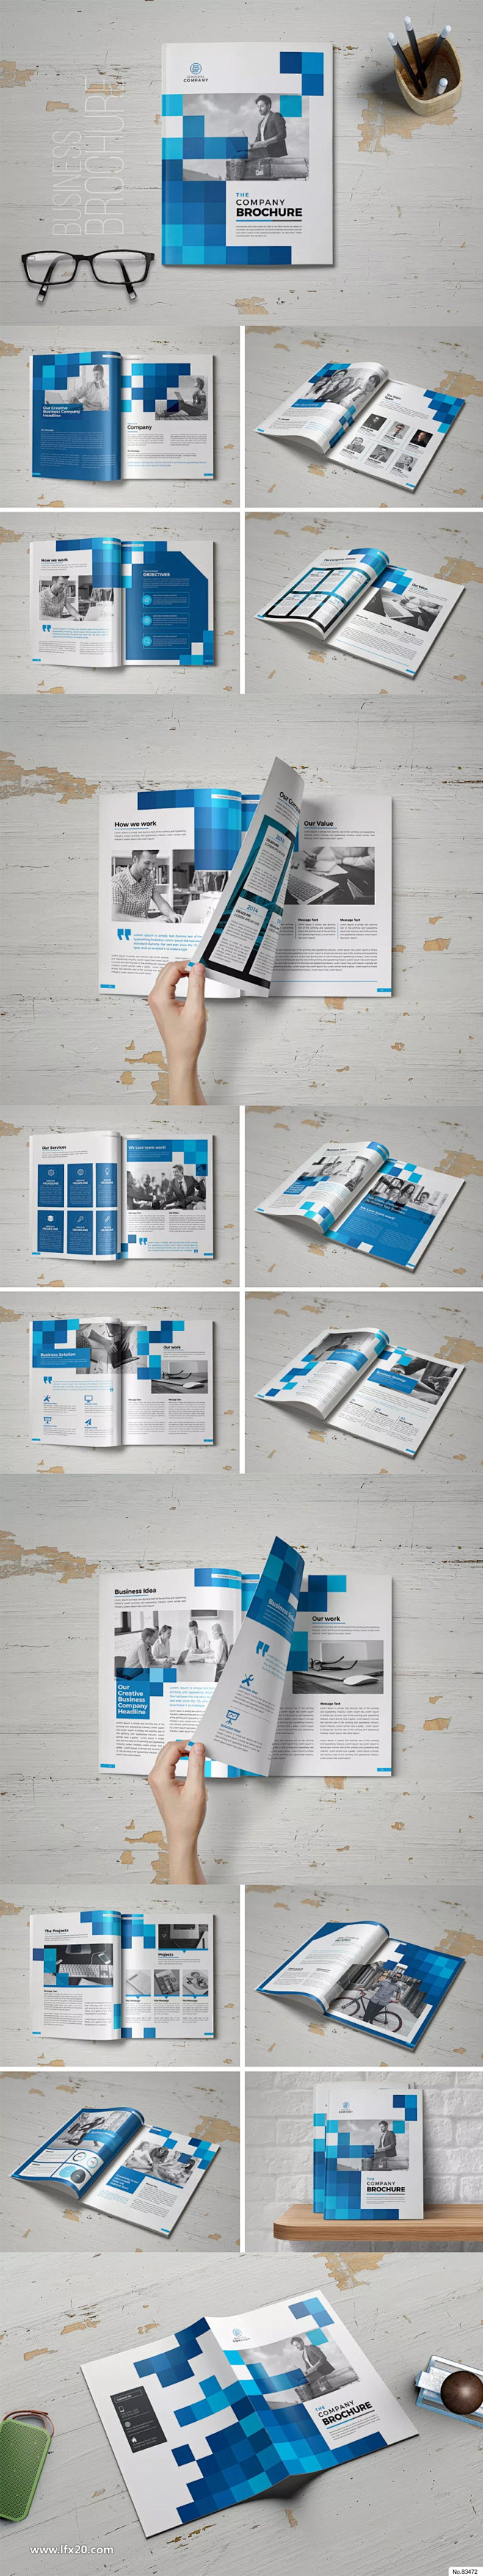 时尚大气商务画册宣传册版式设计模板素材